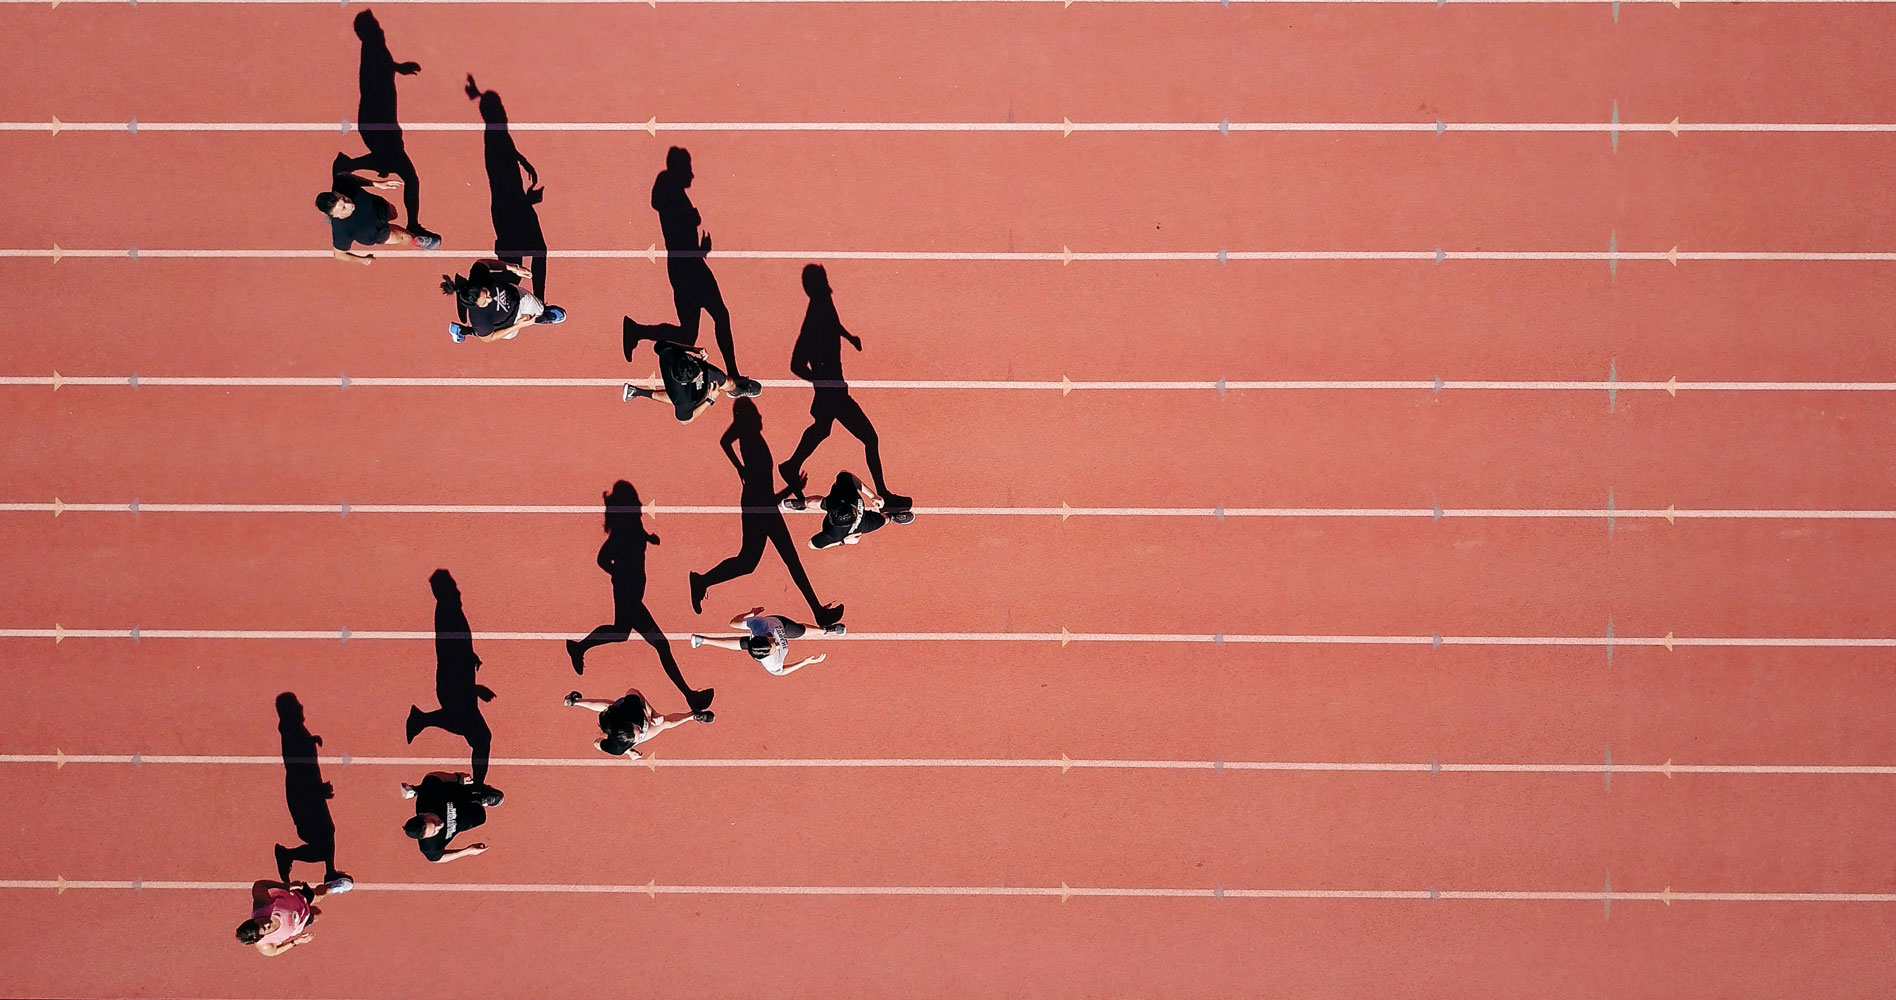 Een foto van een atletiekbaan, van bovenaf genomen. Acht personen lopen op de baan en vormen een driehoek met de punt naar rechts. Hun schaduwen vallen mooi op de baan, wat de illusie wekt dat ze de Progress-vlag uitbeelden.